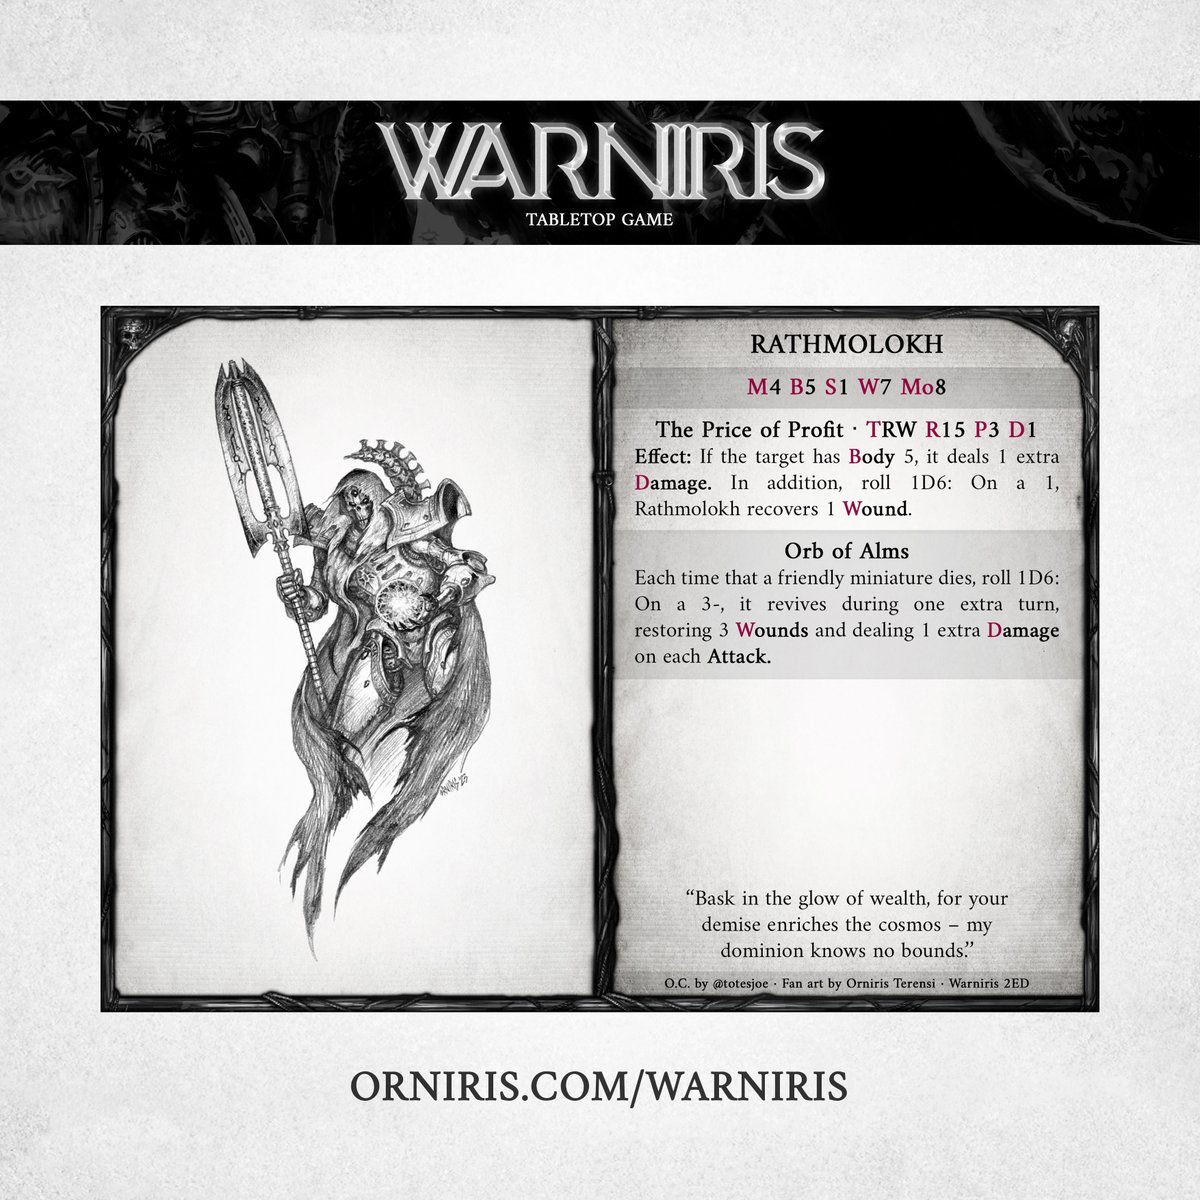 Character illustration for totesjoe 💀 Orniris.com #warhammerfanart #warhammerart #warhammer #warhammer40000 #warhammer40k #necrons #grimdark #characterart #characterillustration #paintingwarhammer #overlord